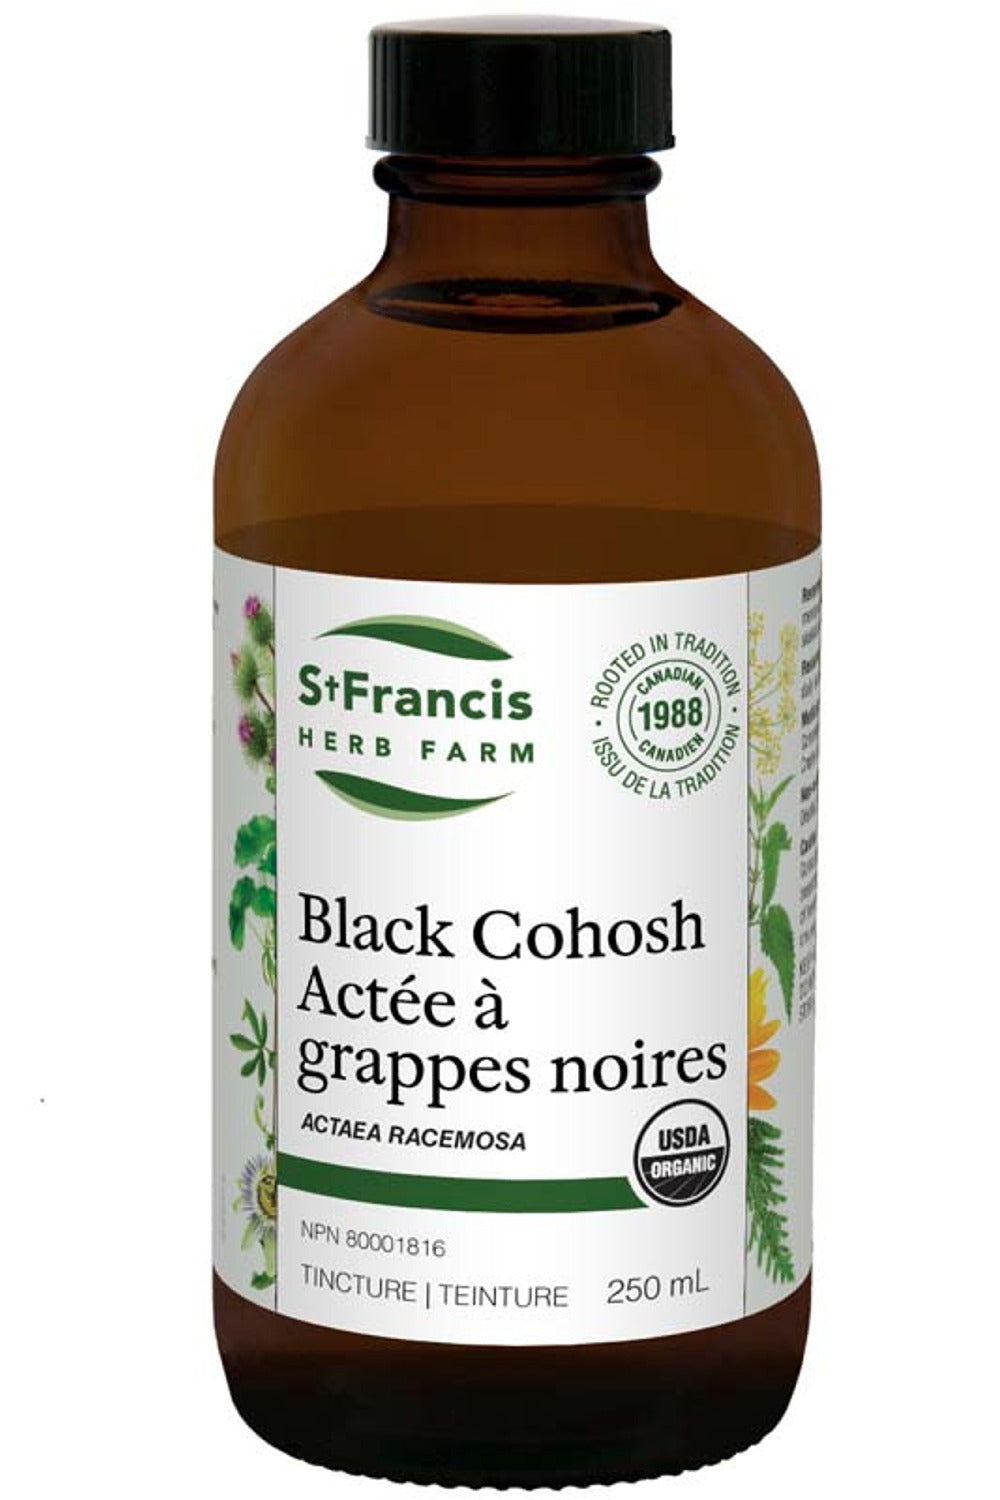 ST FRANCIS HERB FARM Black Cohosh (250 ml)